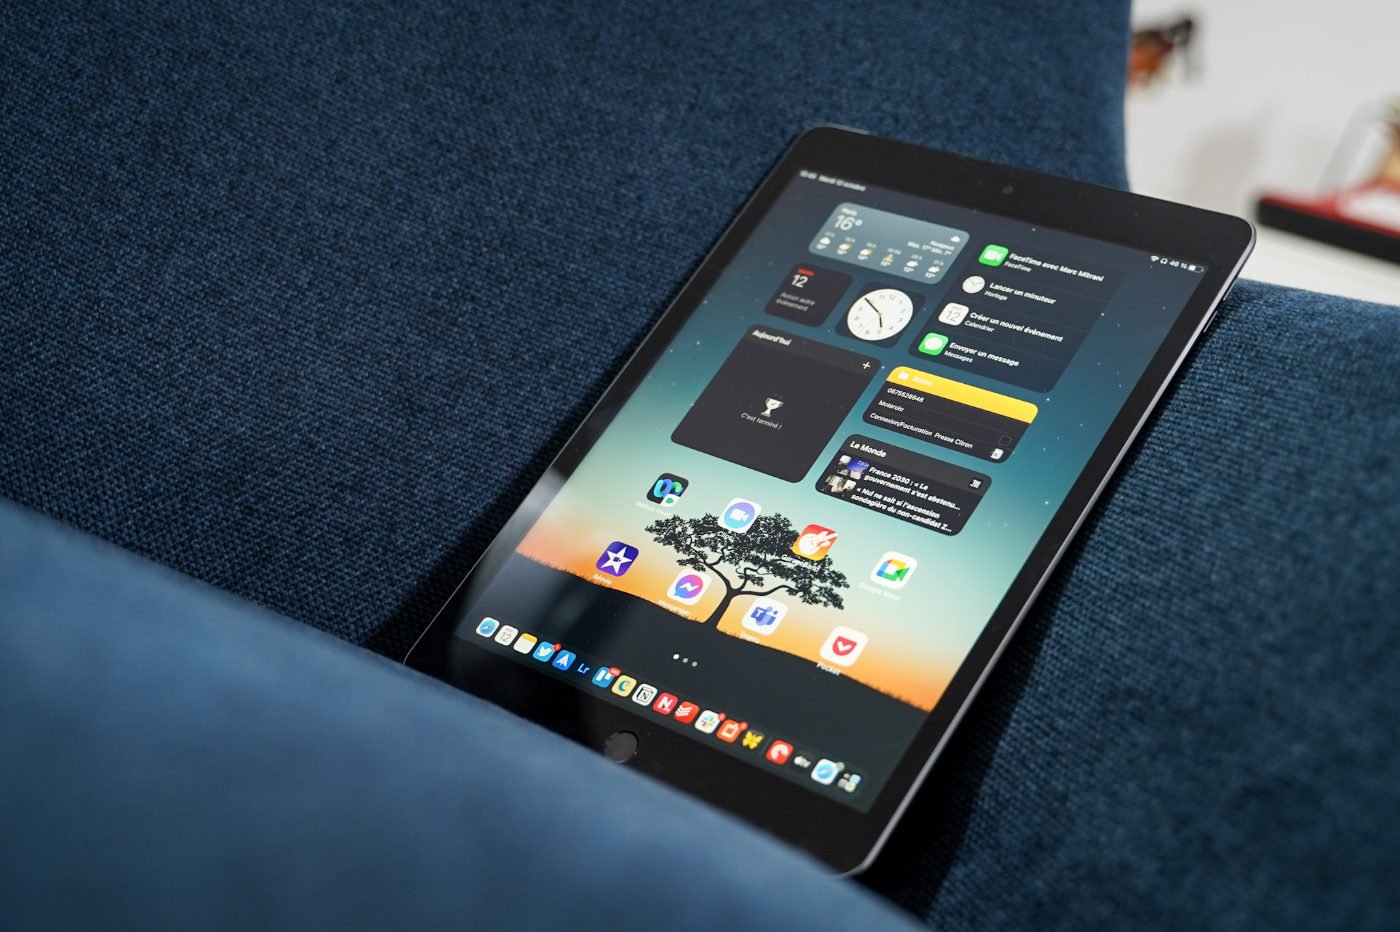 iPad Pro (12,9 pouces) - Caractéristiques techniques (FR)